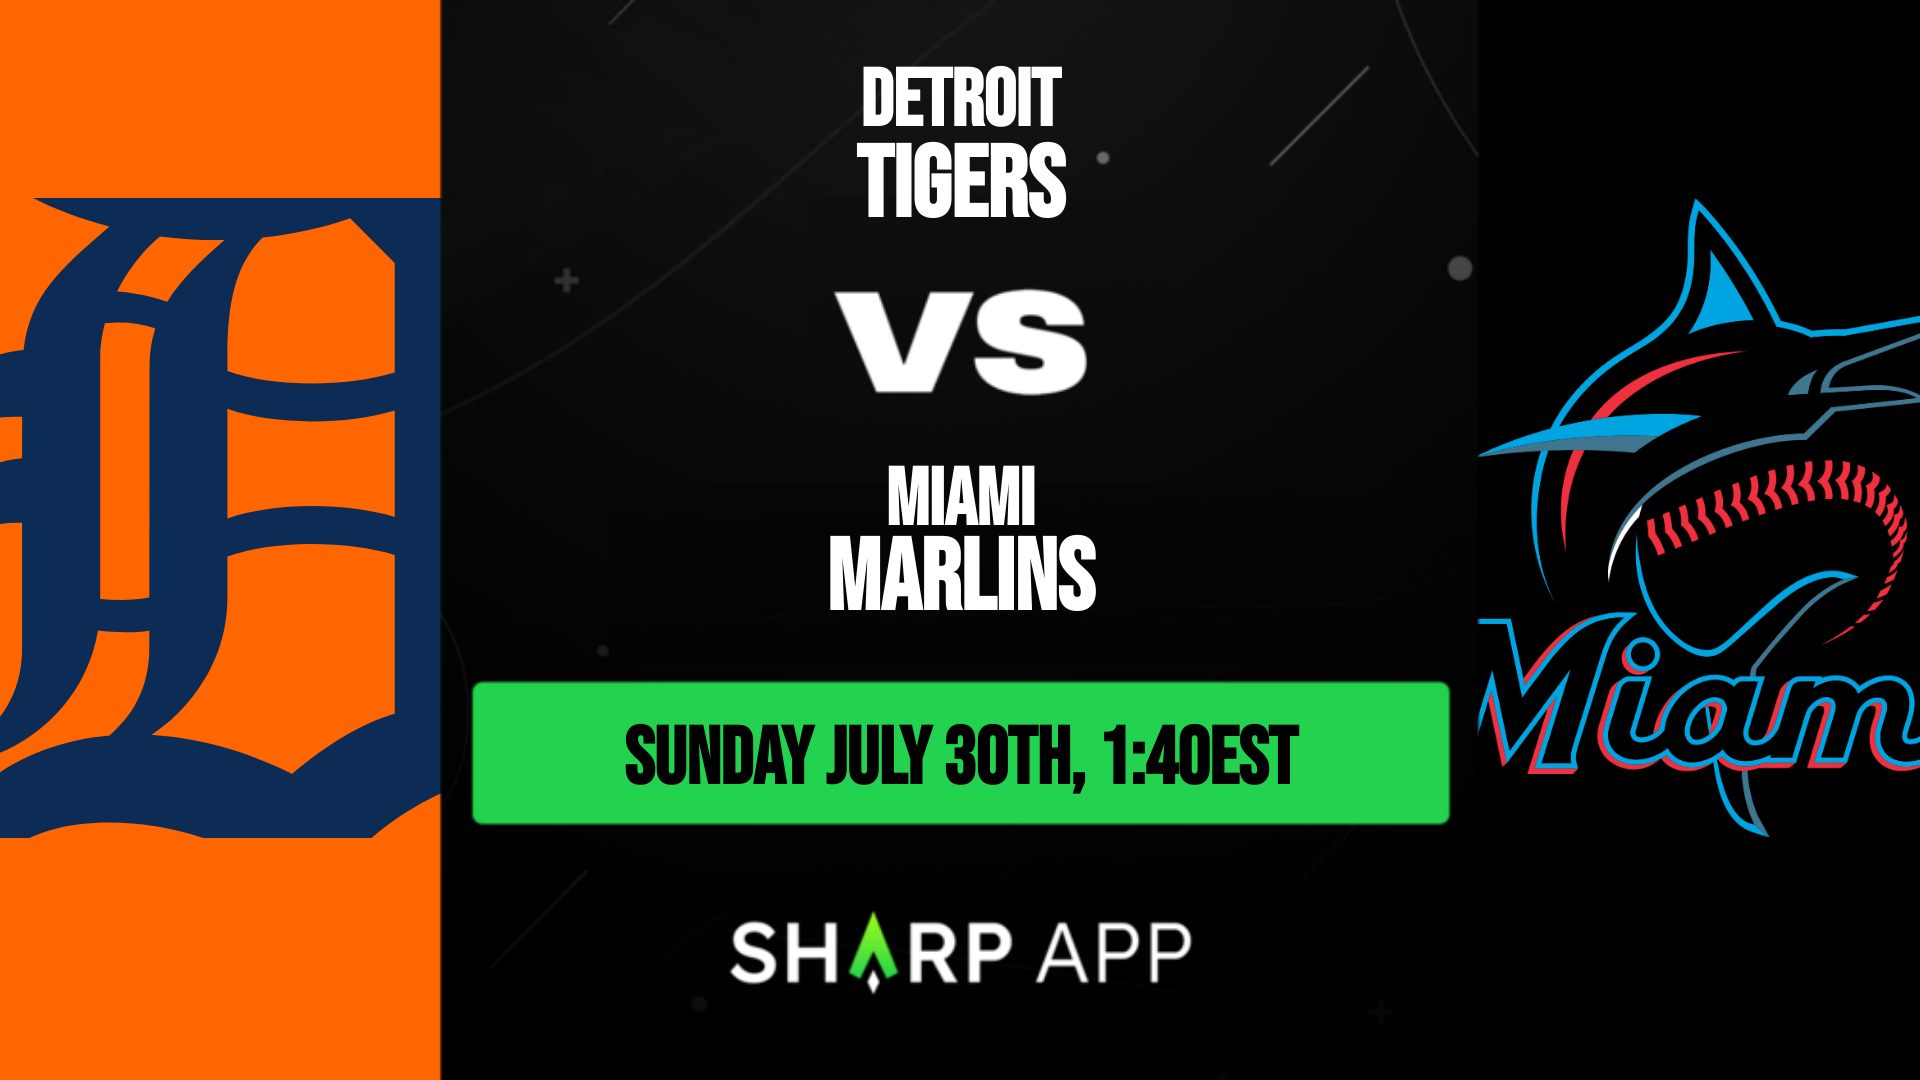 Tigers vs. Marlins